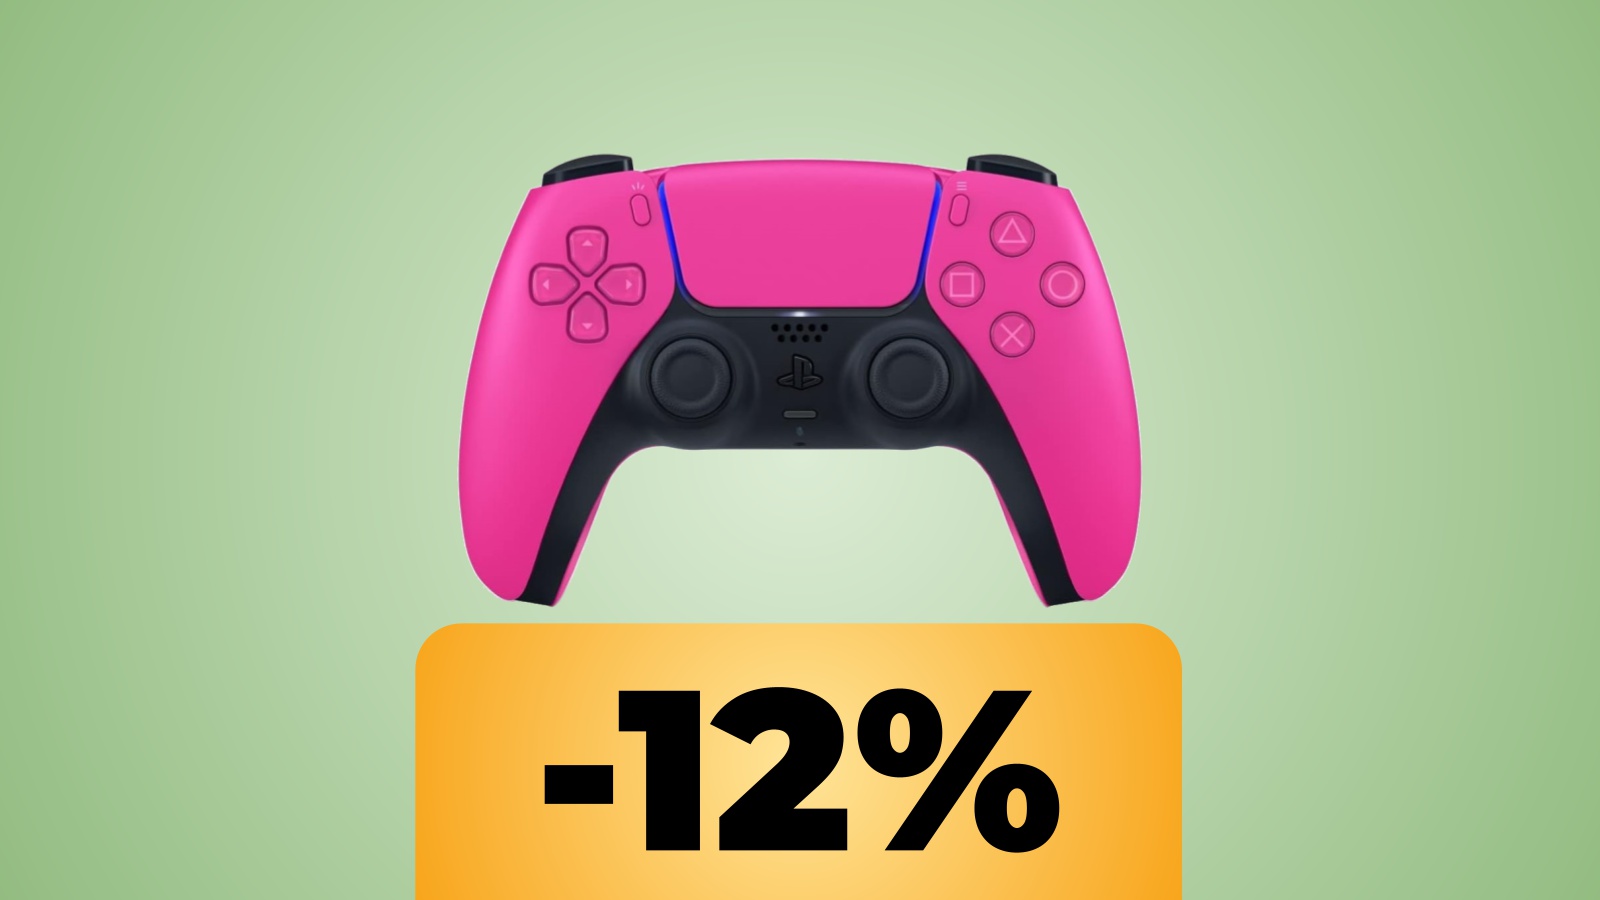 DualSense di PS5 colore Nova Pink: l'offerta Amazon propone uno sconto dopo mesi di prezzo fisso